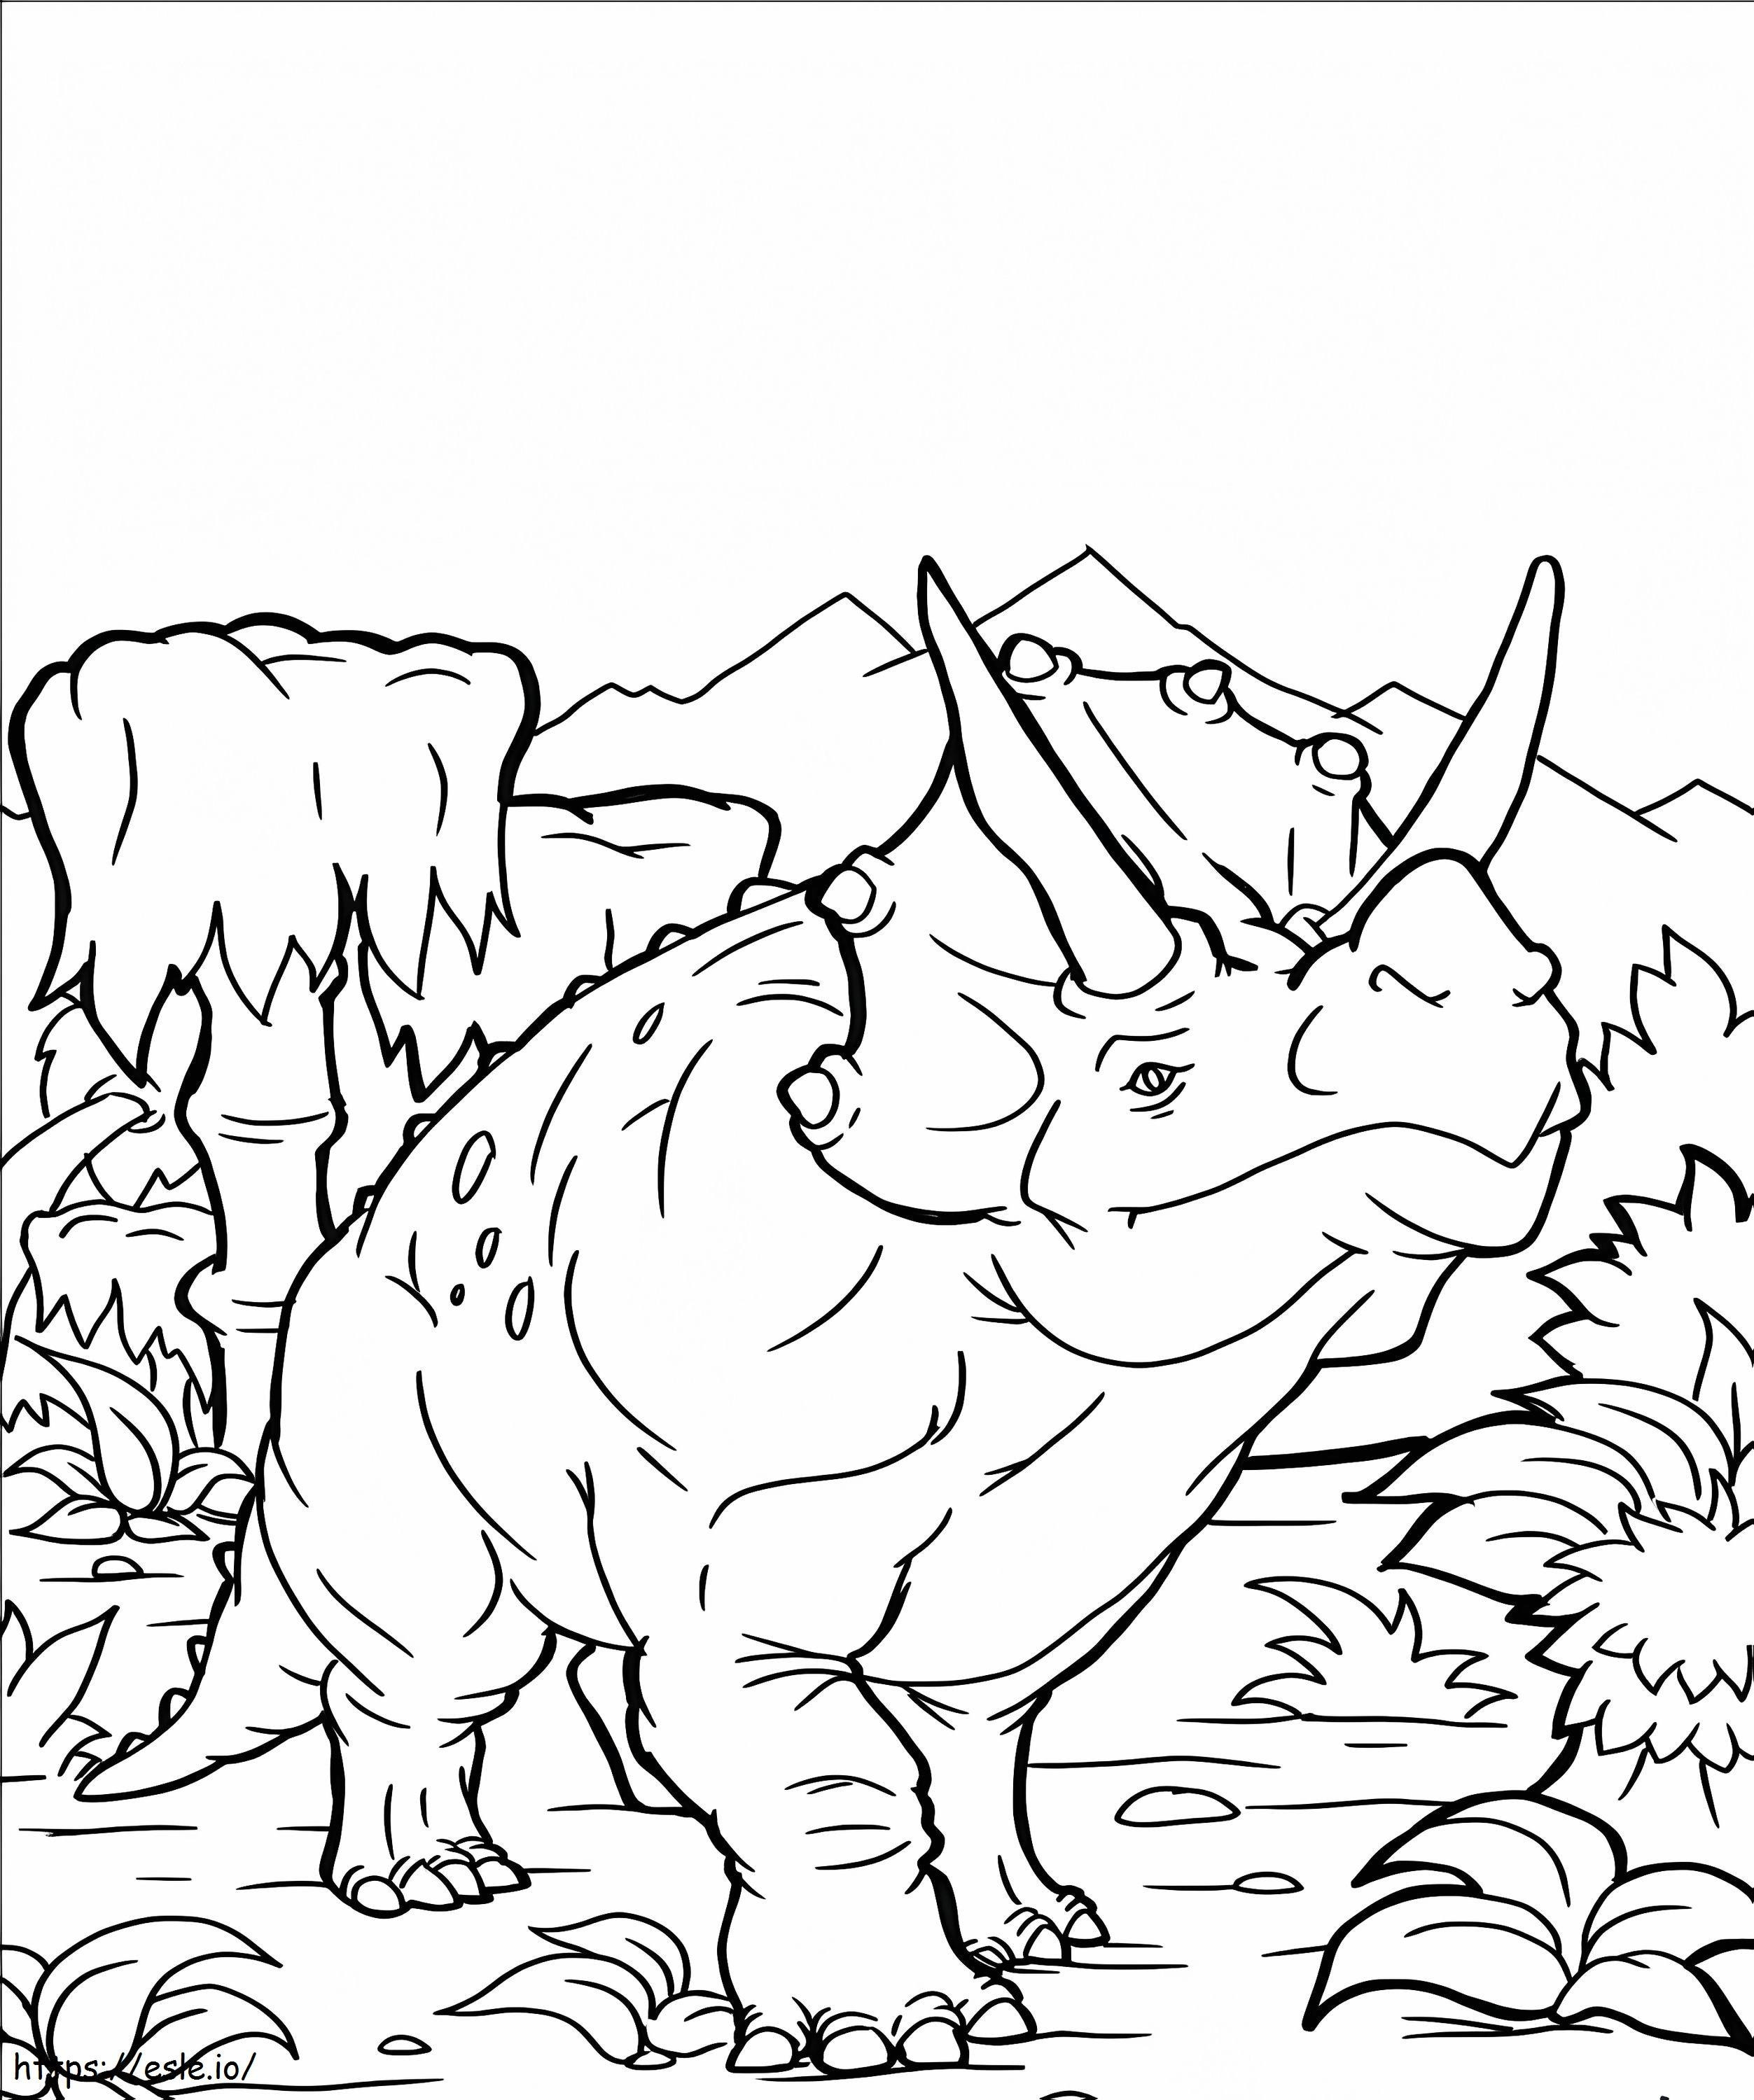 Malvorlage Triceratops 3 ausmalbilder